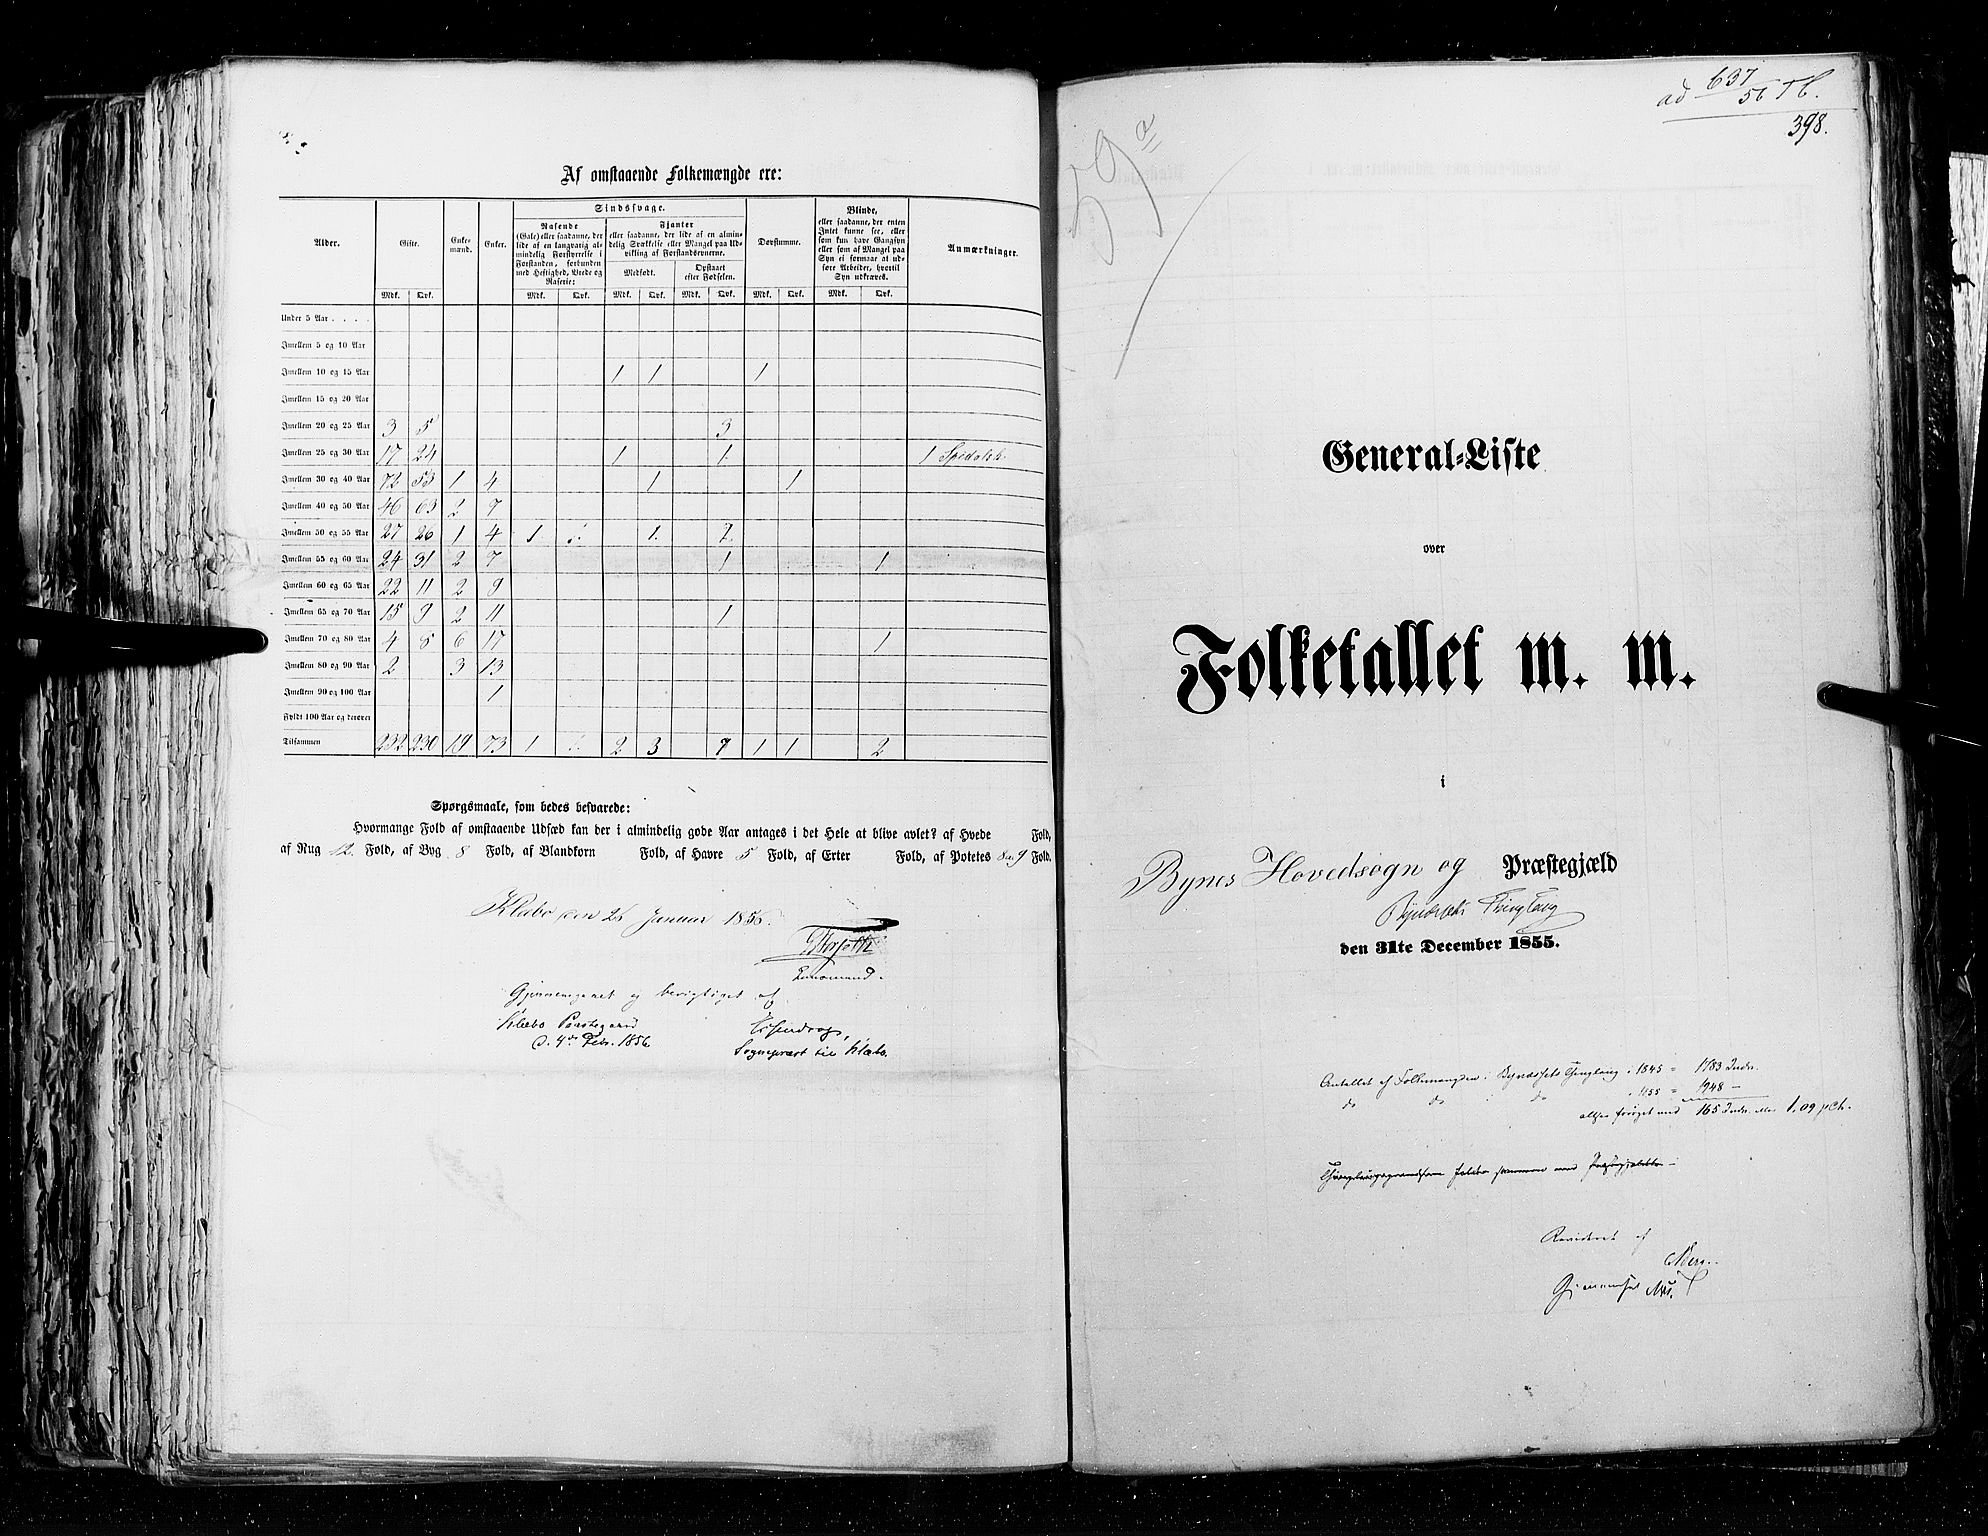 RA, Folketellingen 1855, bind 5: Nordre Bergenhus amt, Romsdal amt og Søndre Trondhjem amt, 1855, s. 398